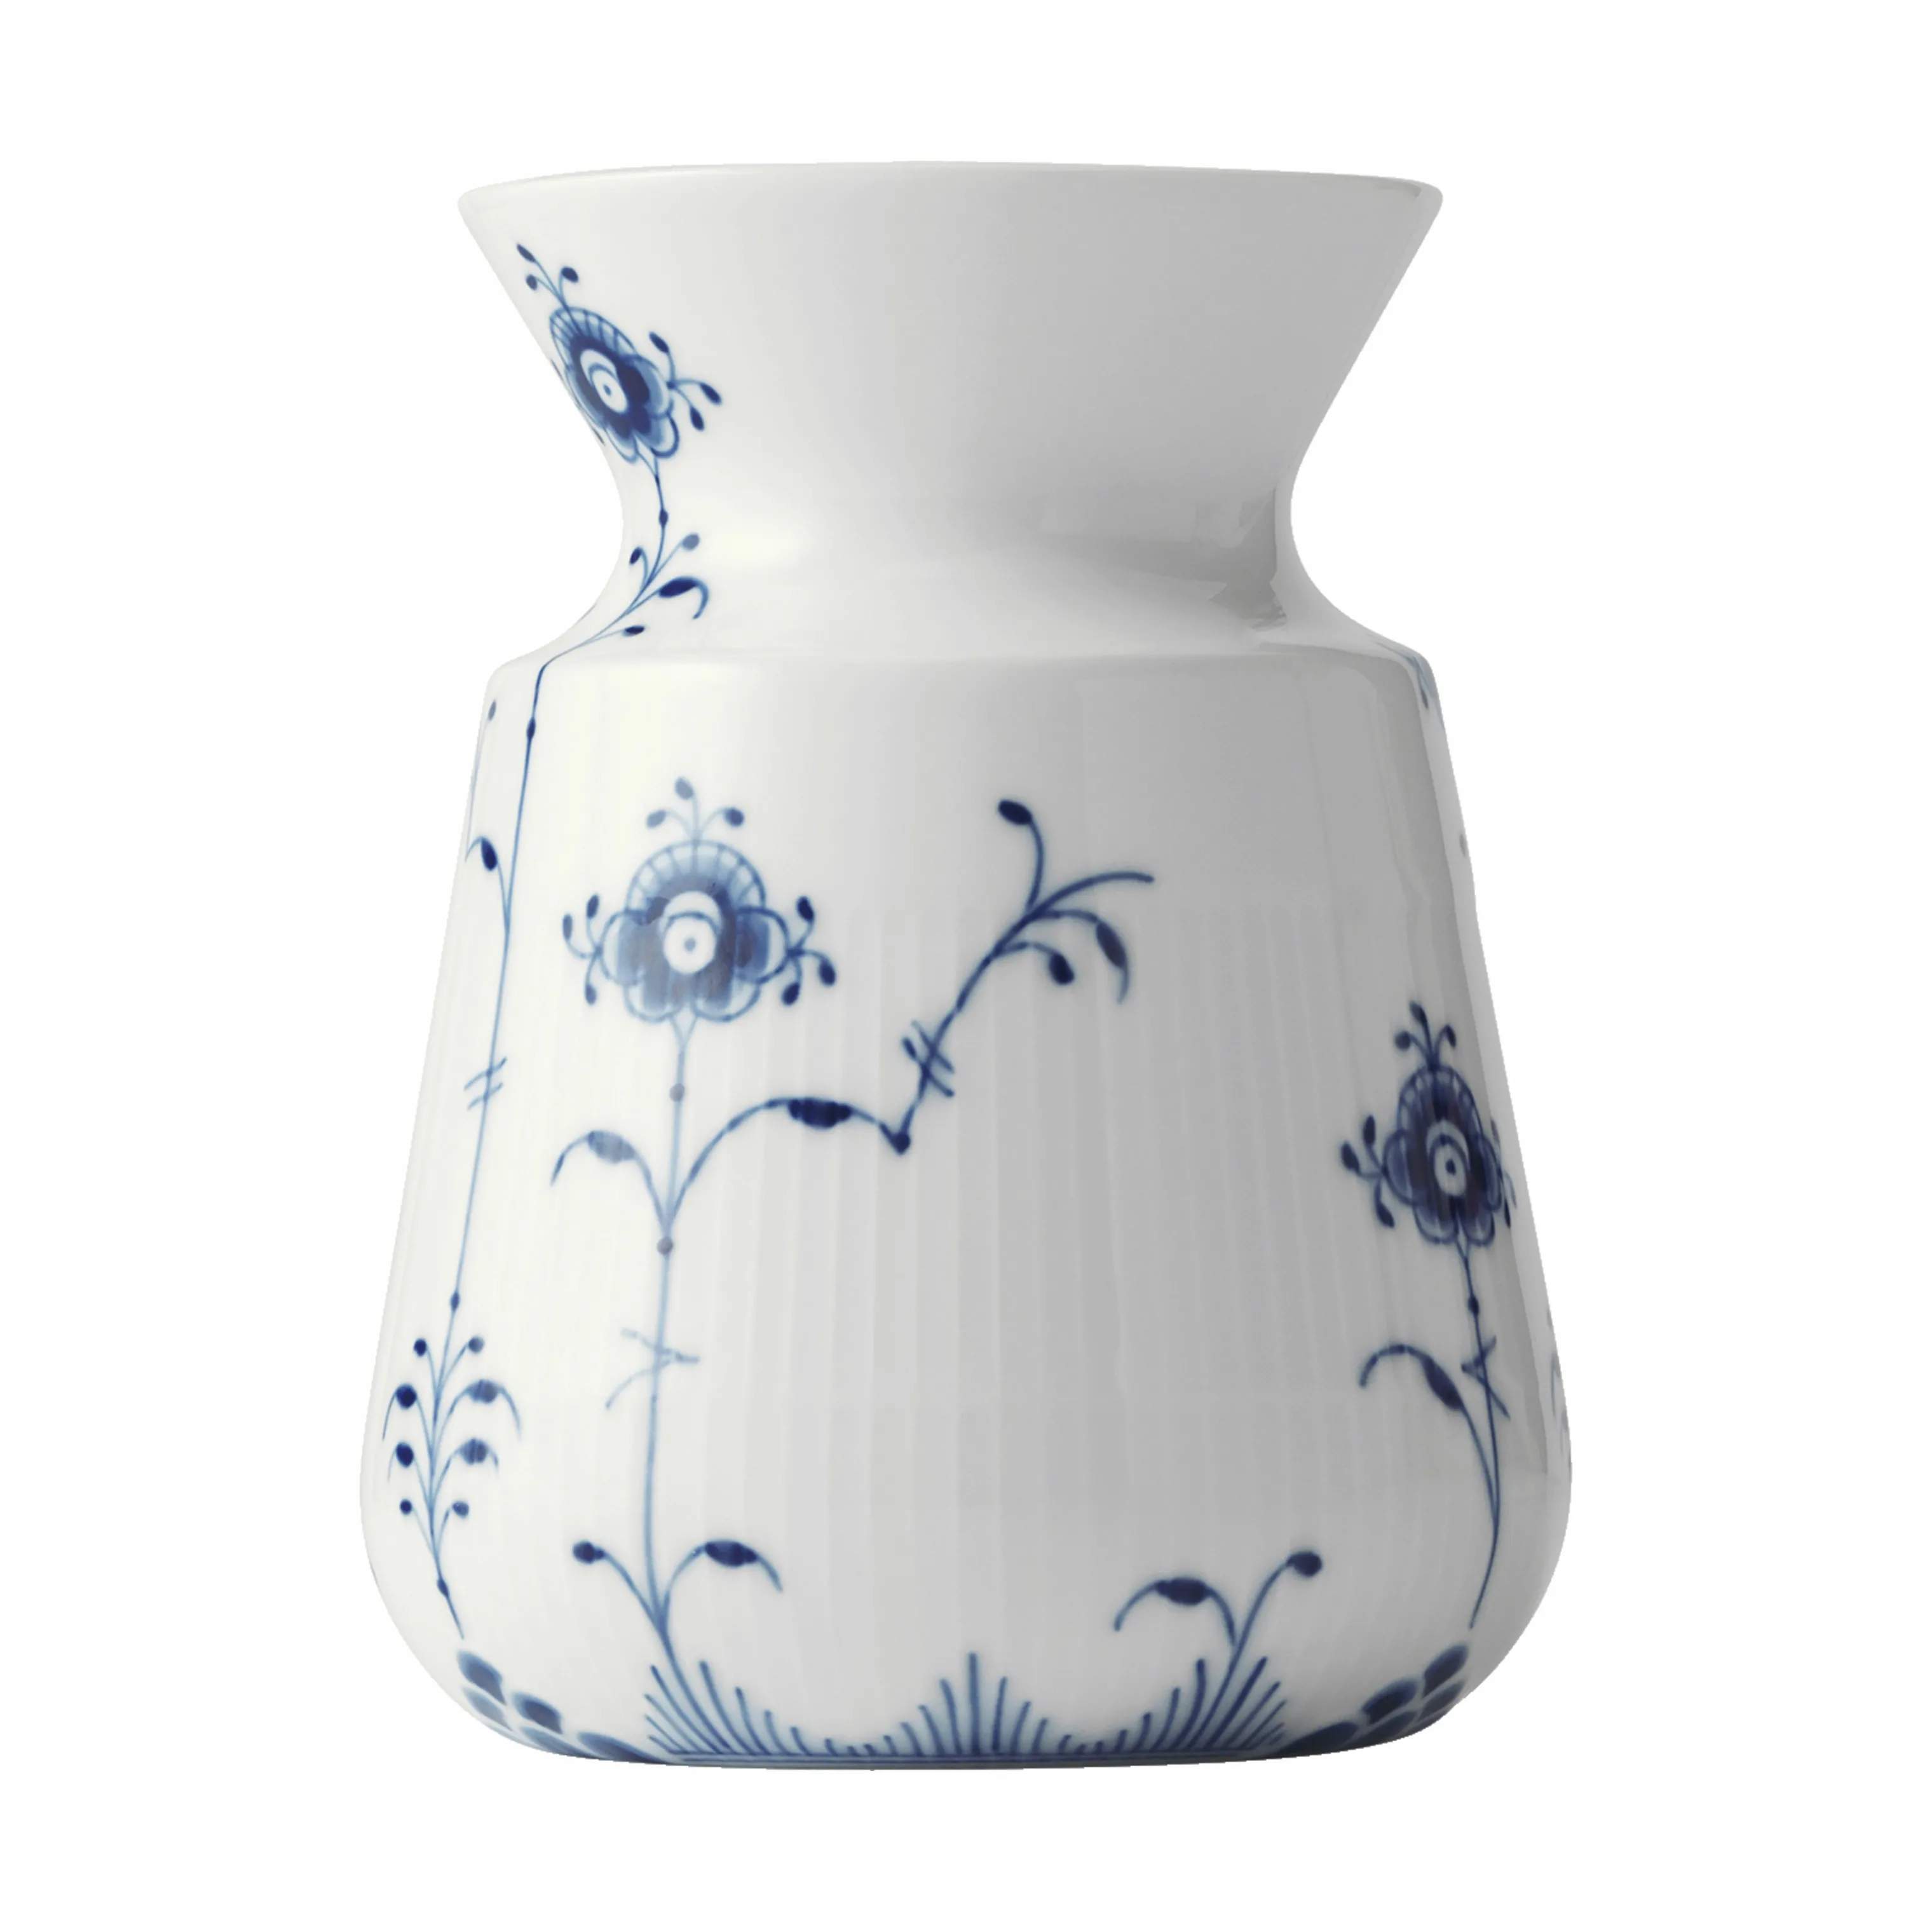 Blå Elements Vase, koboltblå/hvid, large